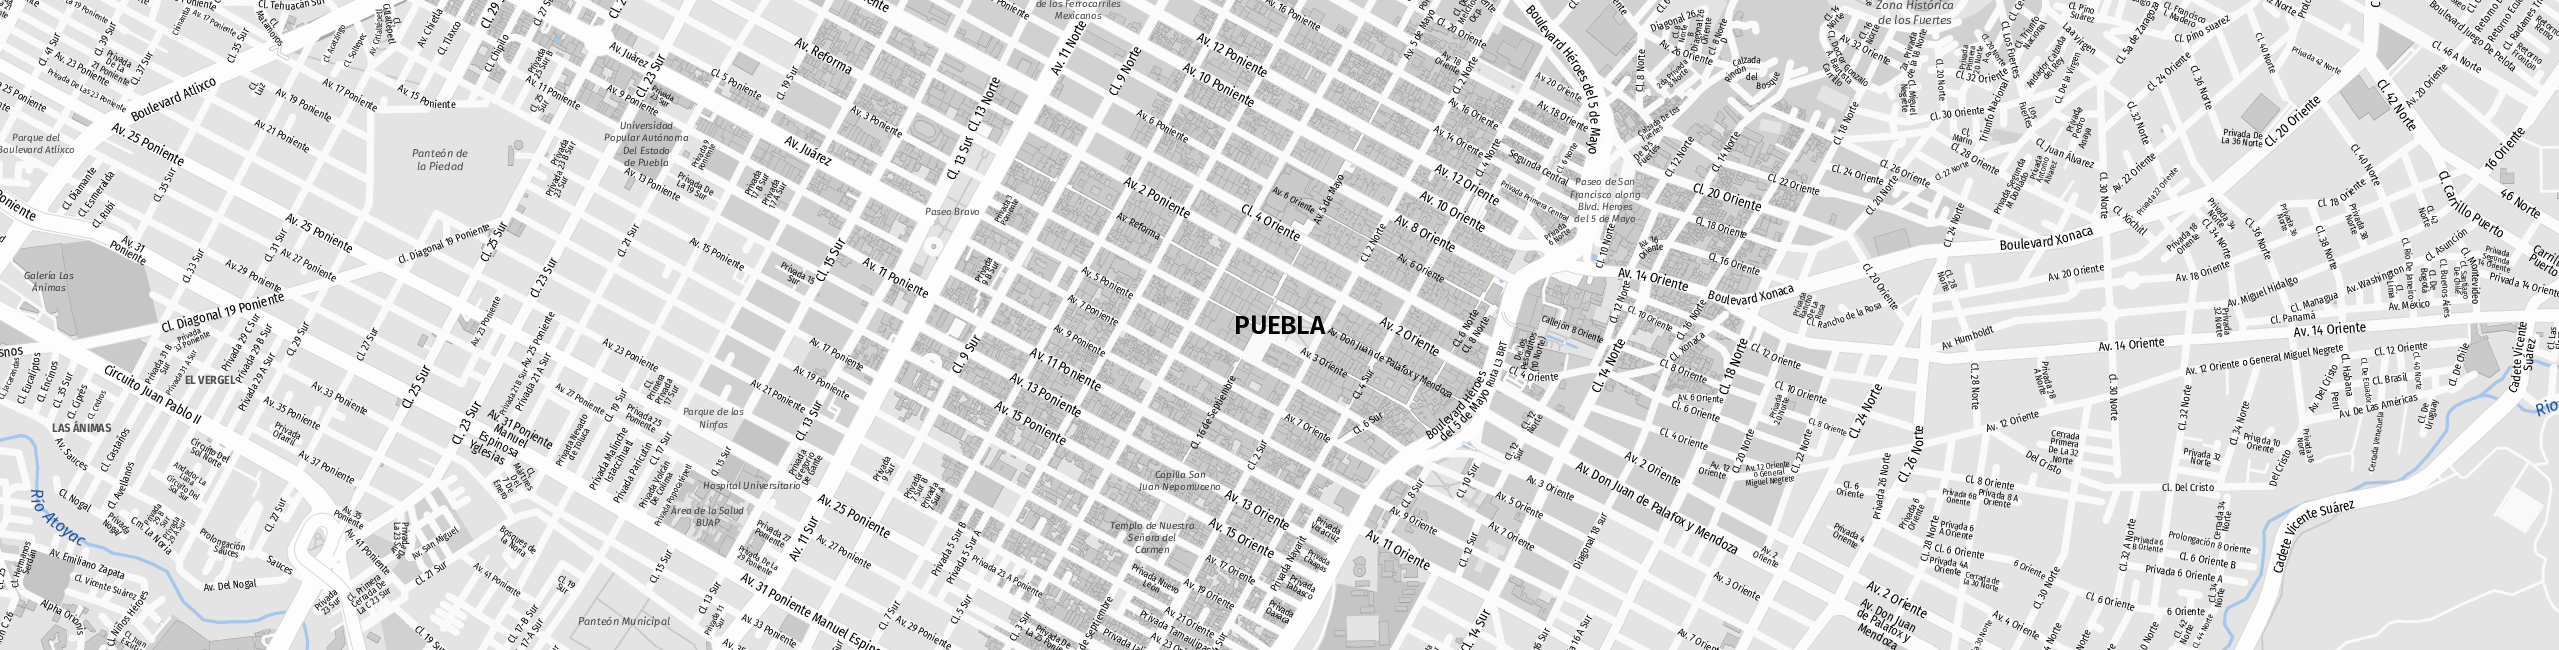 Stadtplan Puebla de Zaragoza zum Downloaden.